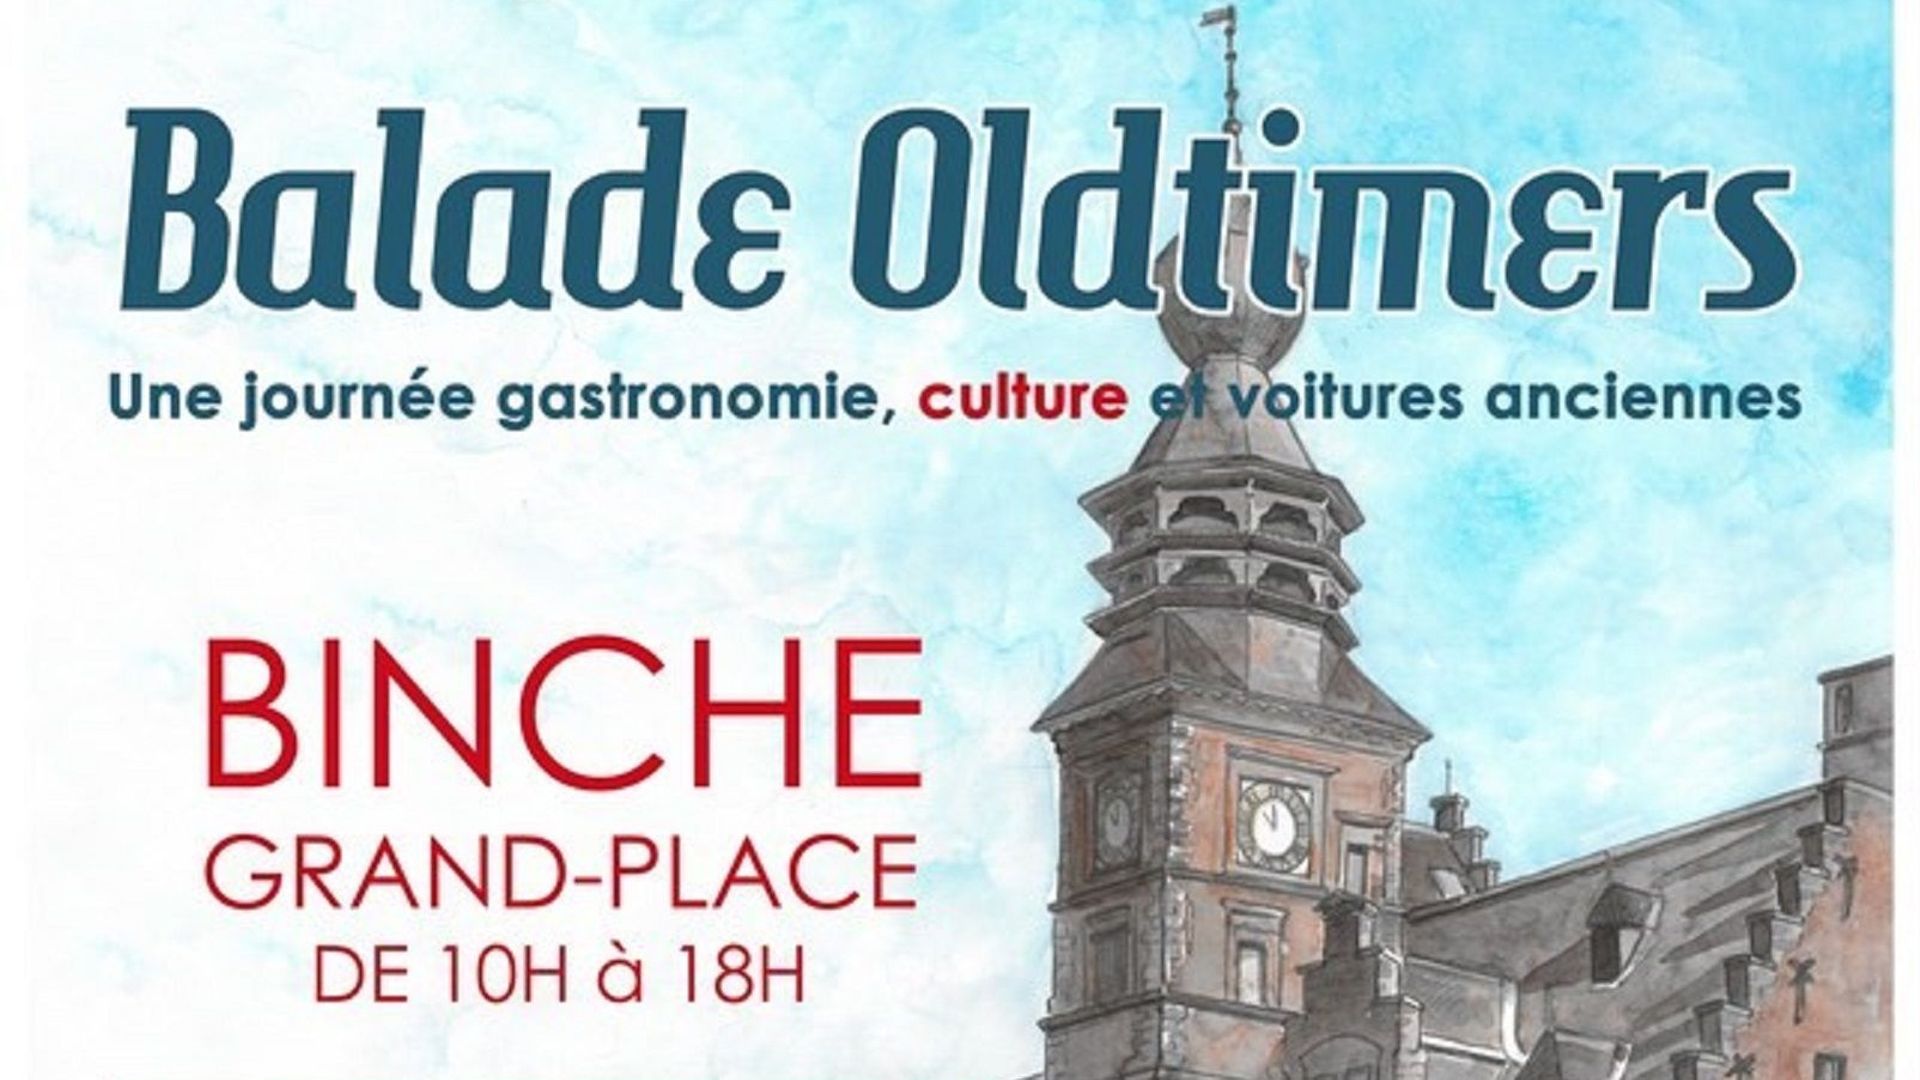 balade-oldtimers-gastronomie-et-culture-a-binche-ce-dimanche-11-aout